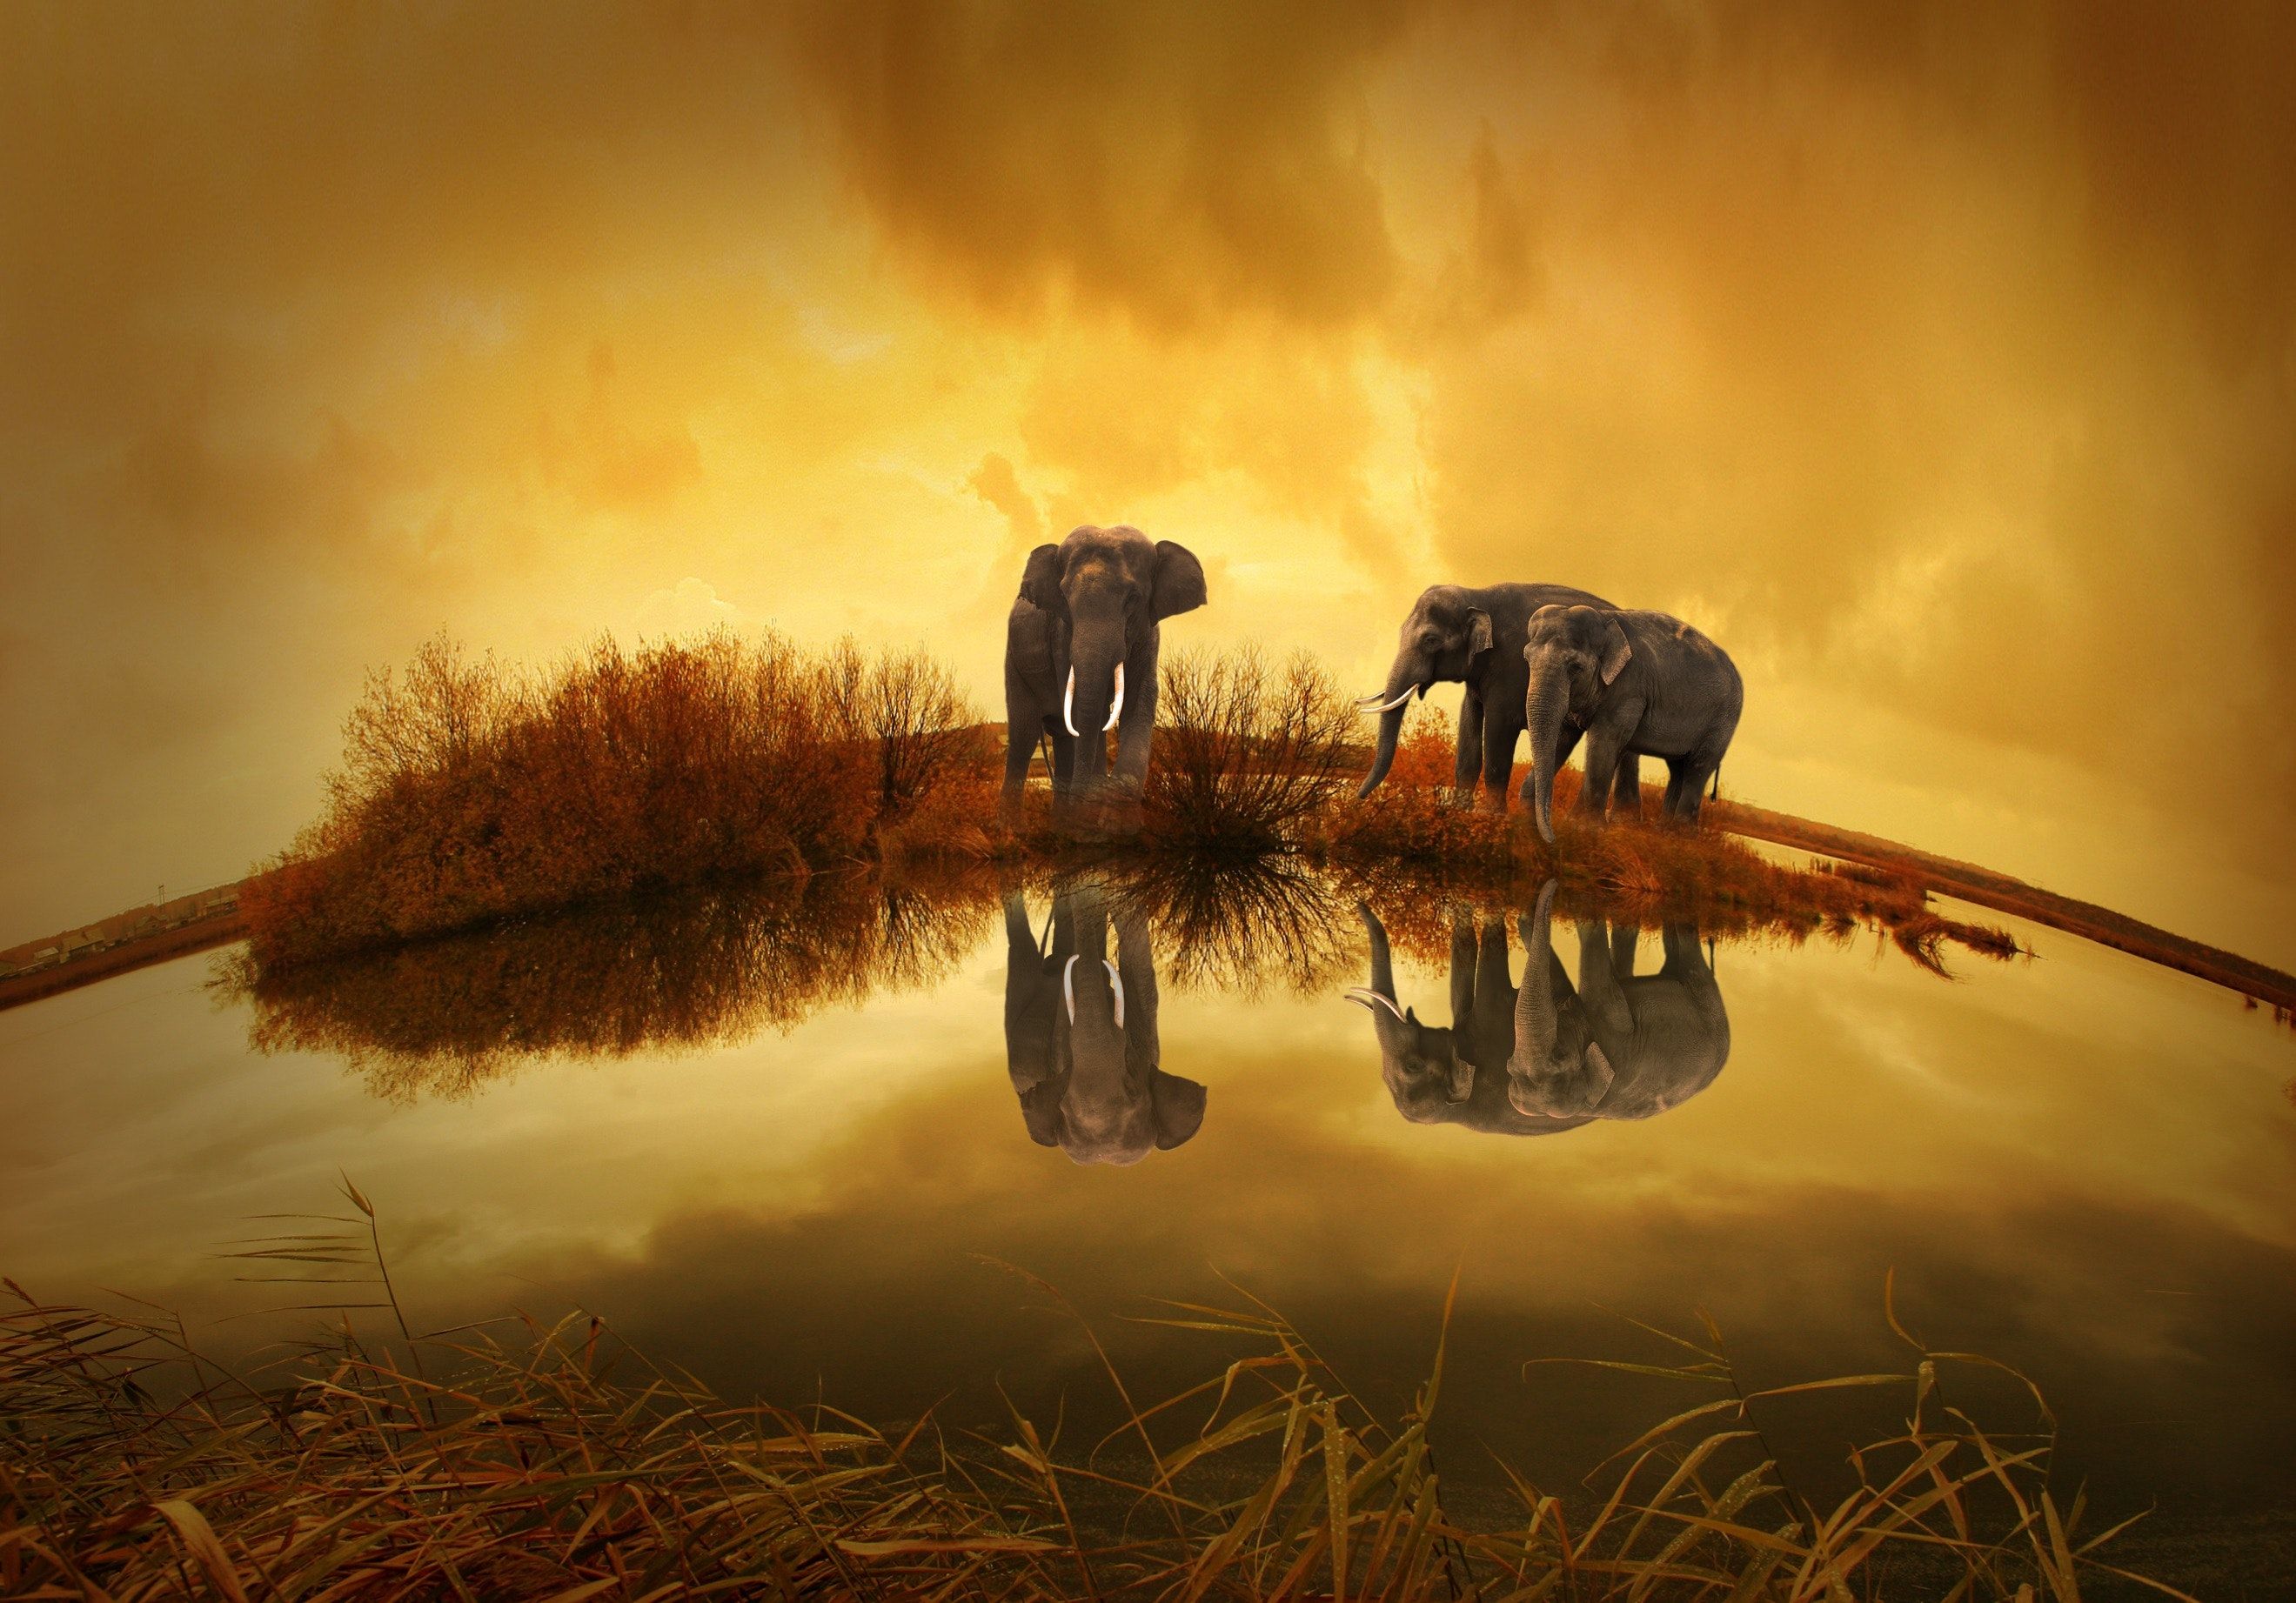  Elefant Hintergrundbild 2639x1843. 1.Elefant Bilder Und Fotos · Kostenlos Downloaden · Stock Fotos